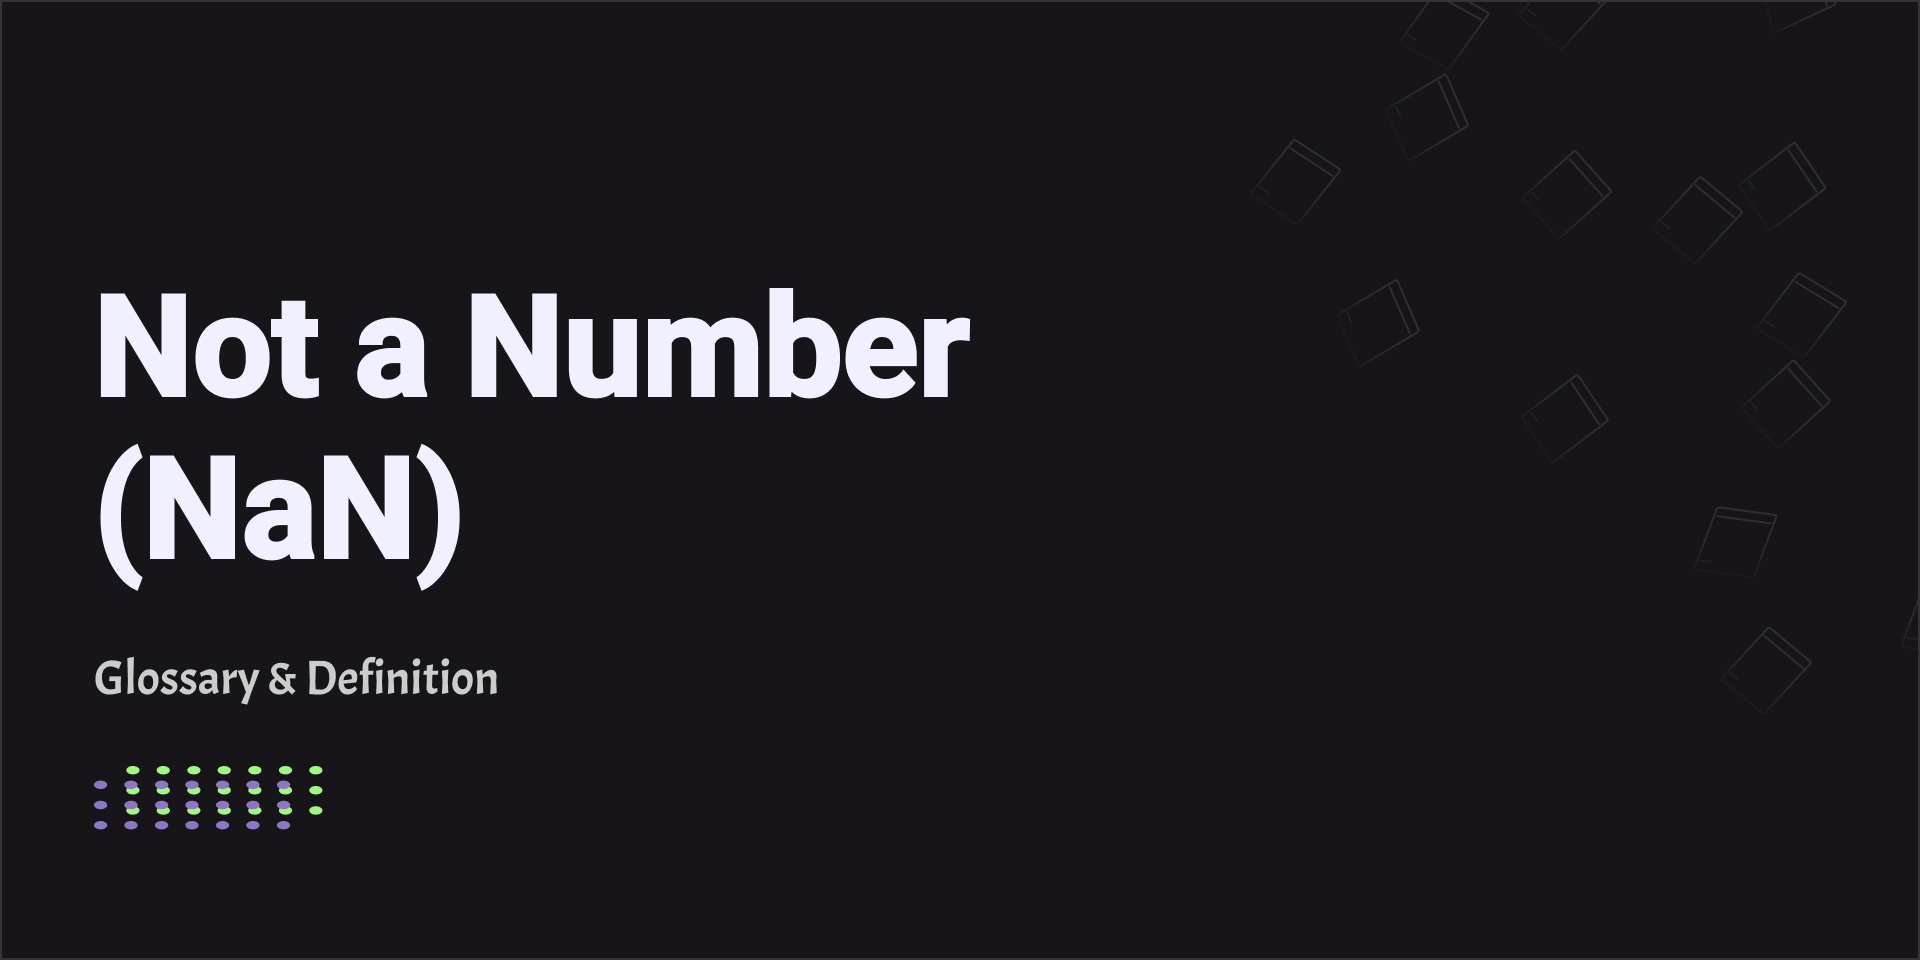 Not a Number (NaN)